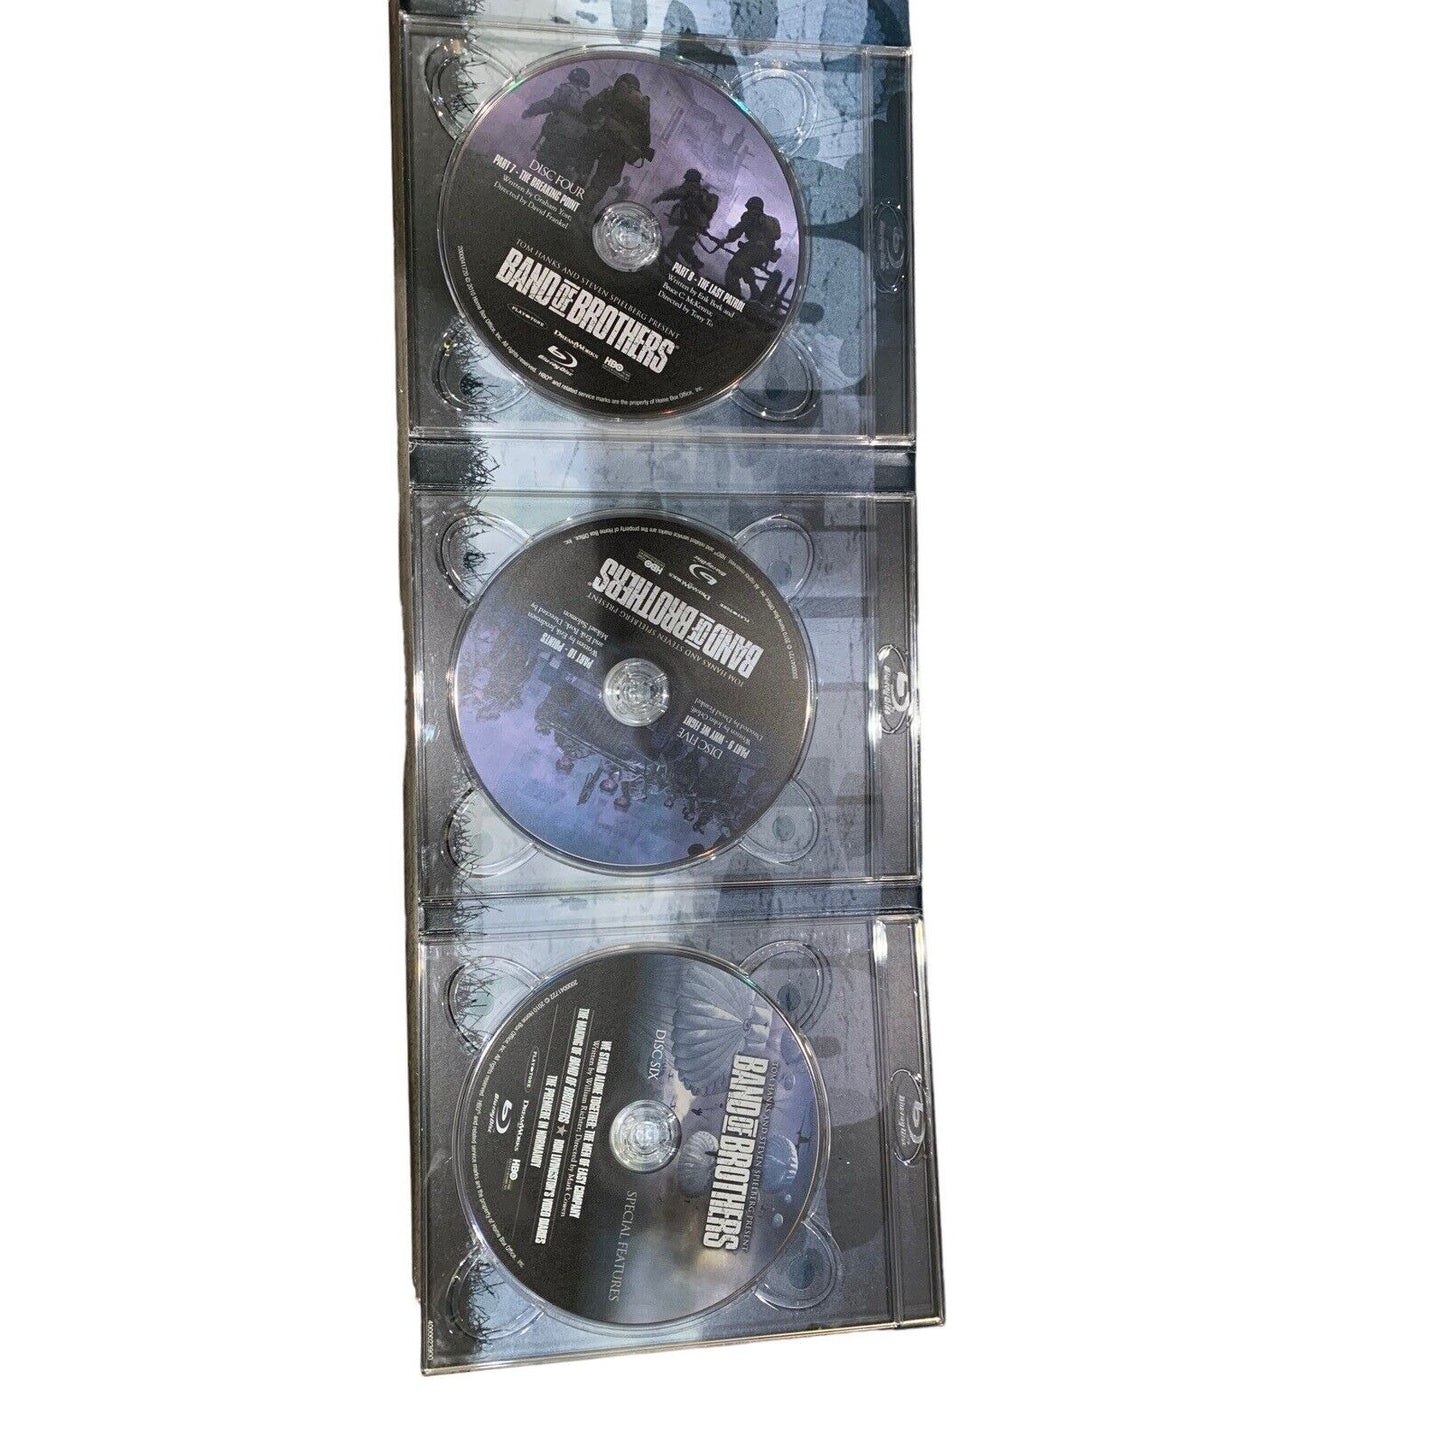 Three DVDs